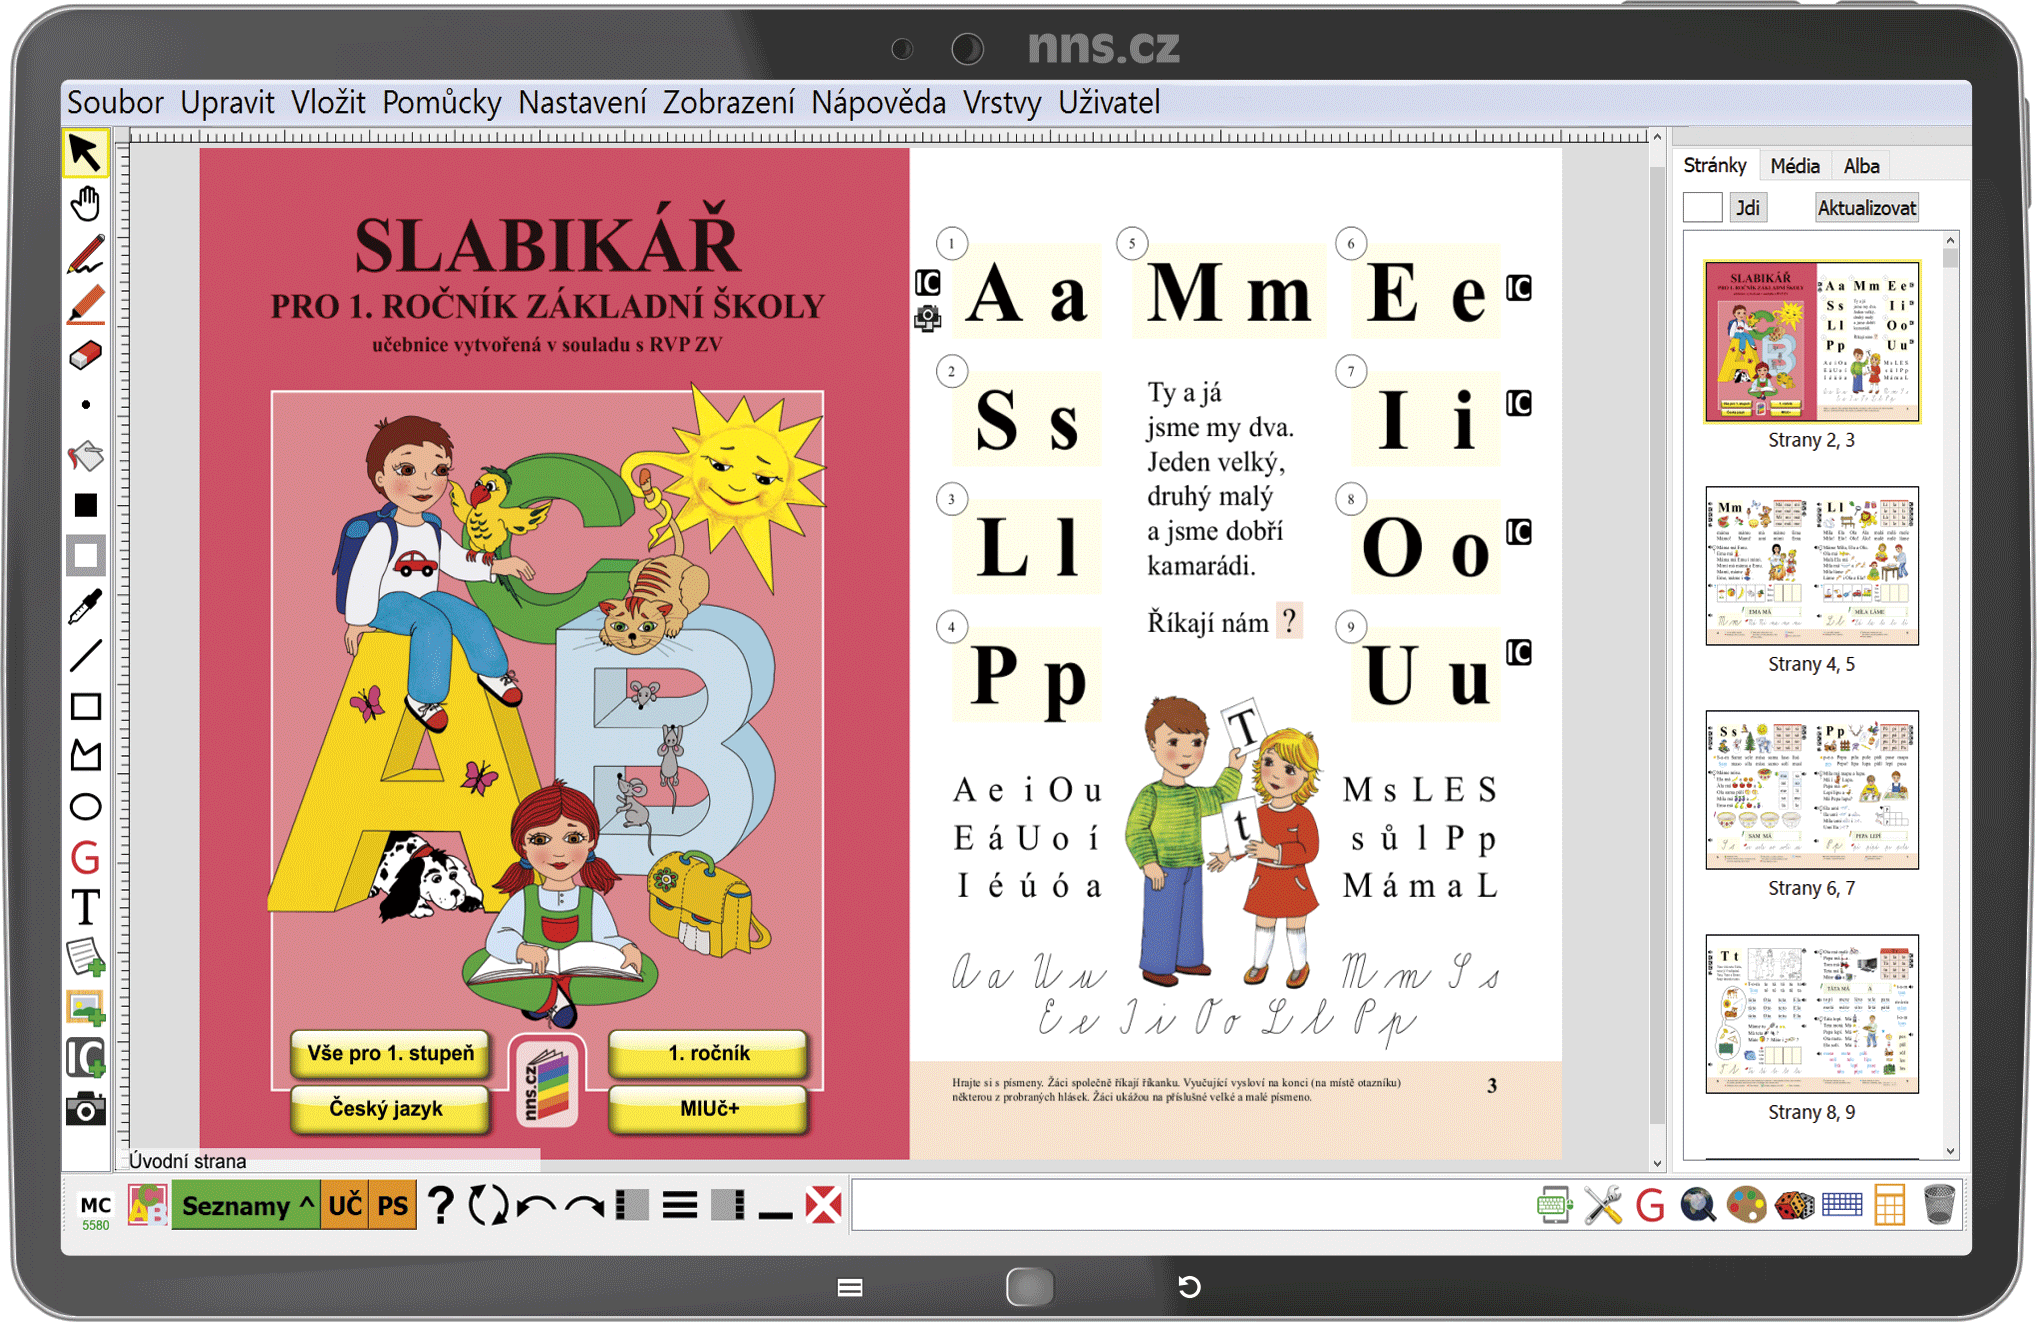 MIUč+ Živá abeceda, Slabikář, Písanka 1-4 (sada) - šk. multilicence na 1 šk. rok